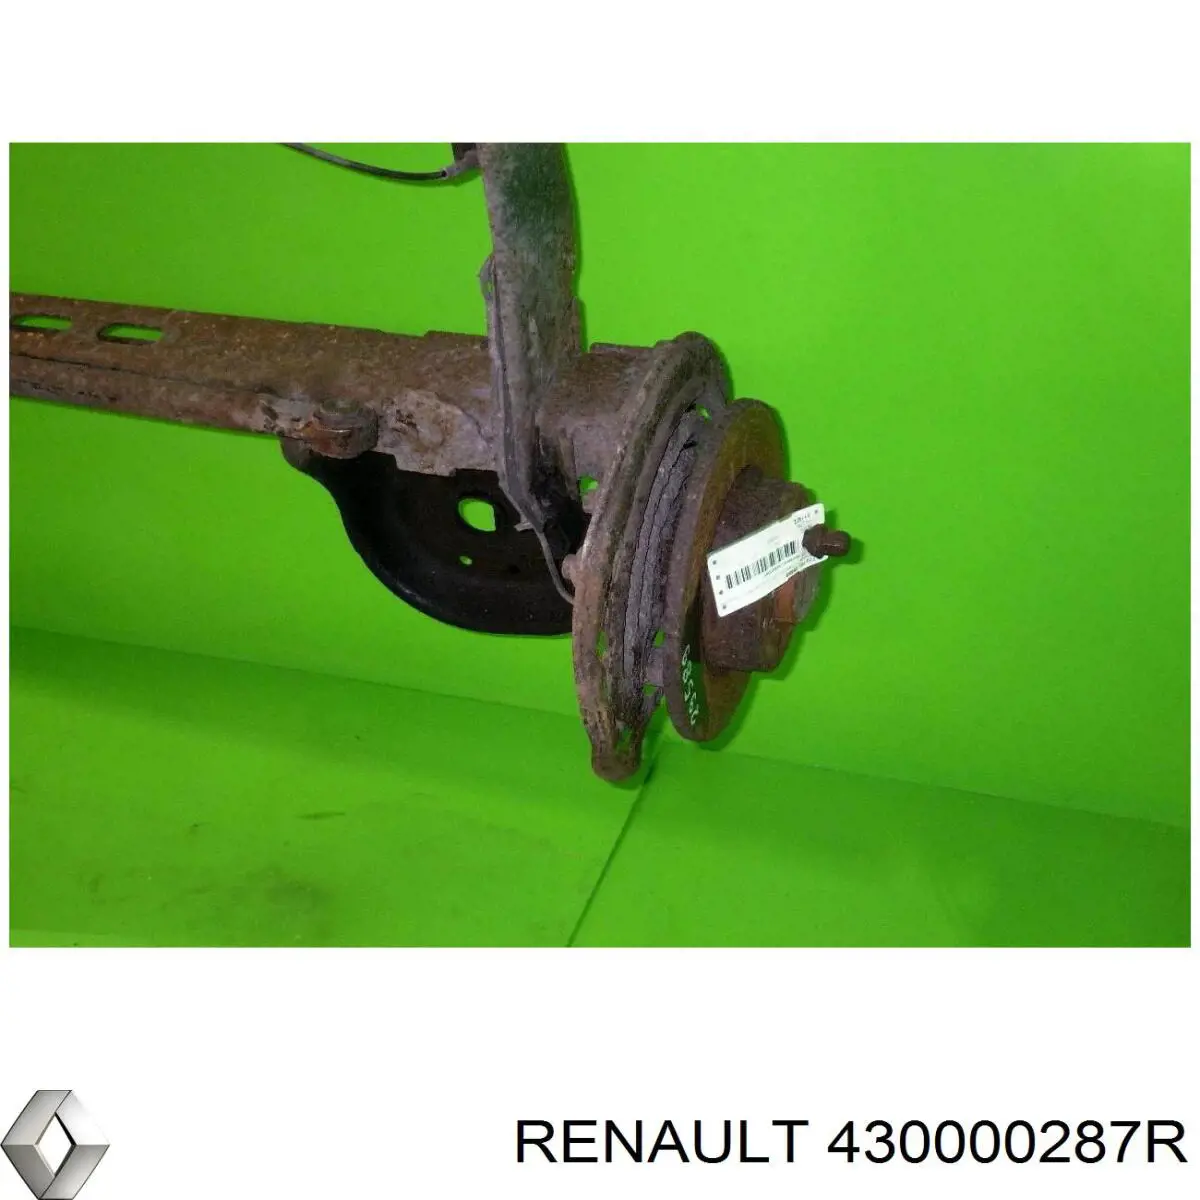 430000287R Renault (RVI) viga de suspensão traseira (plataforma veicular)